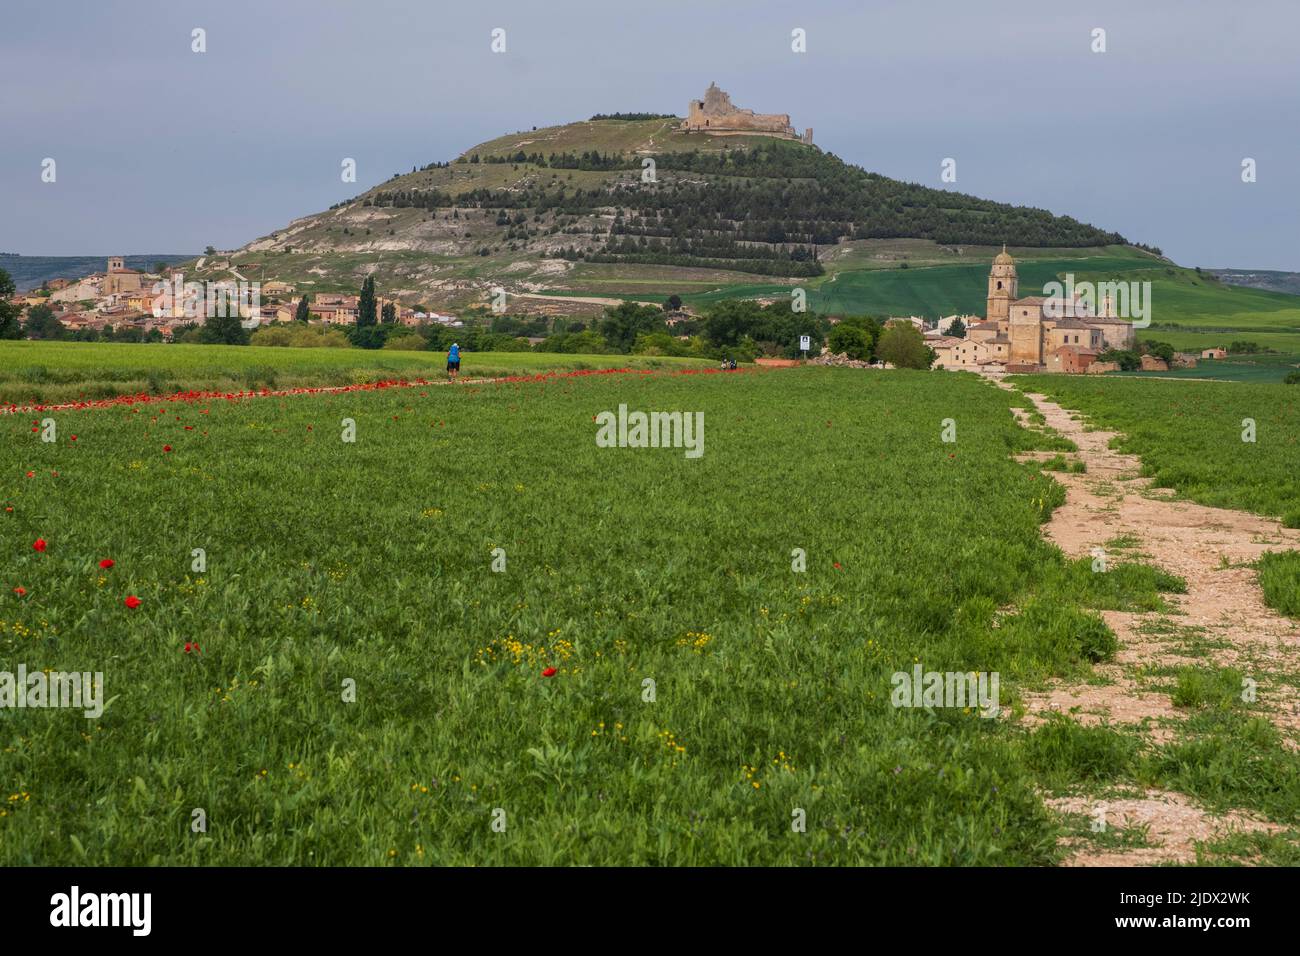 Spain, Castilla y Leon, Camino de Santiago approaching Castrojeriz. Town on left, castle on hilltop, Church of Santa María del Manzano on right. Stock Photo